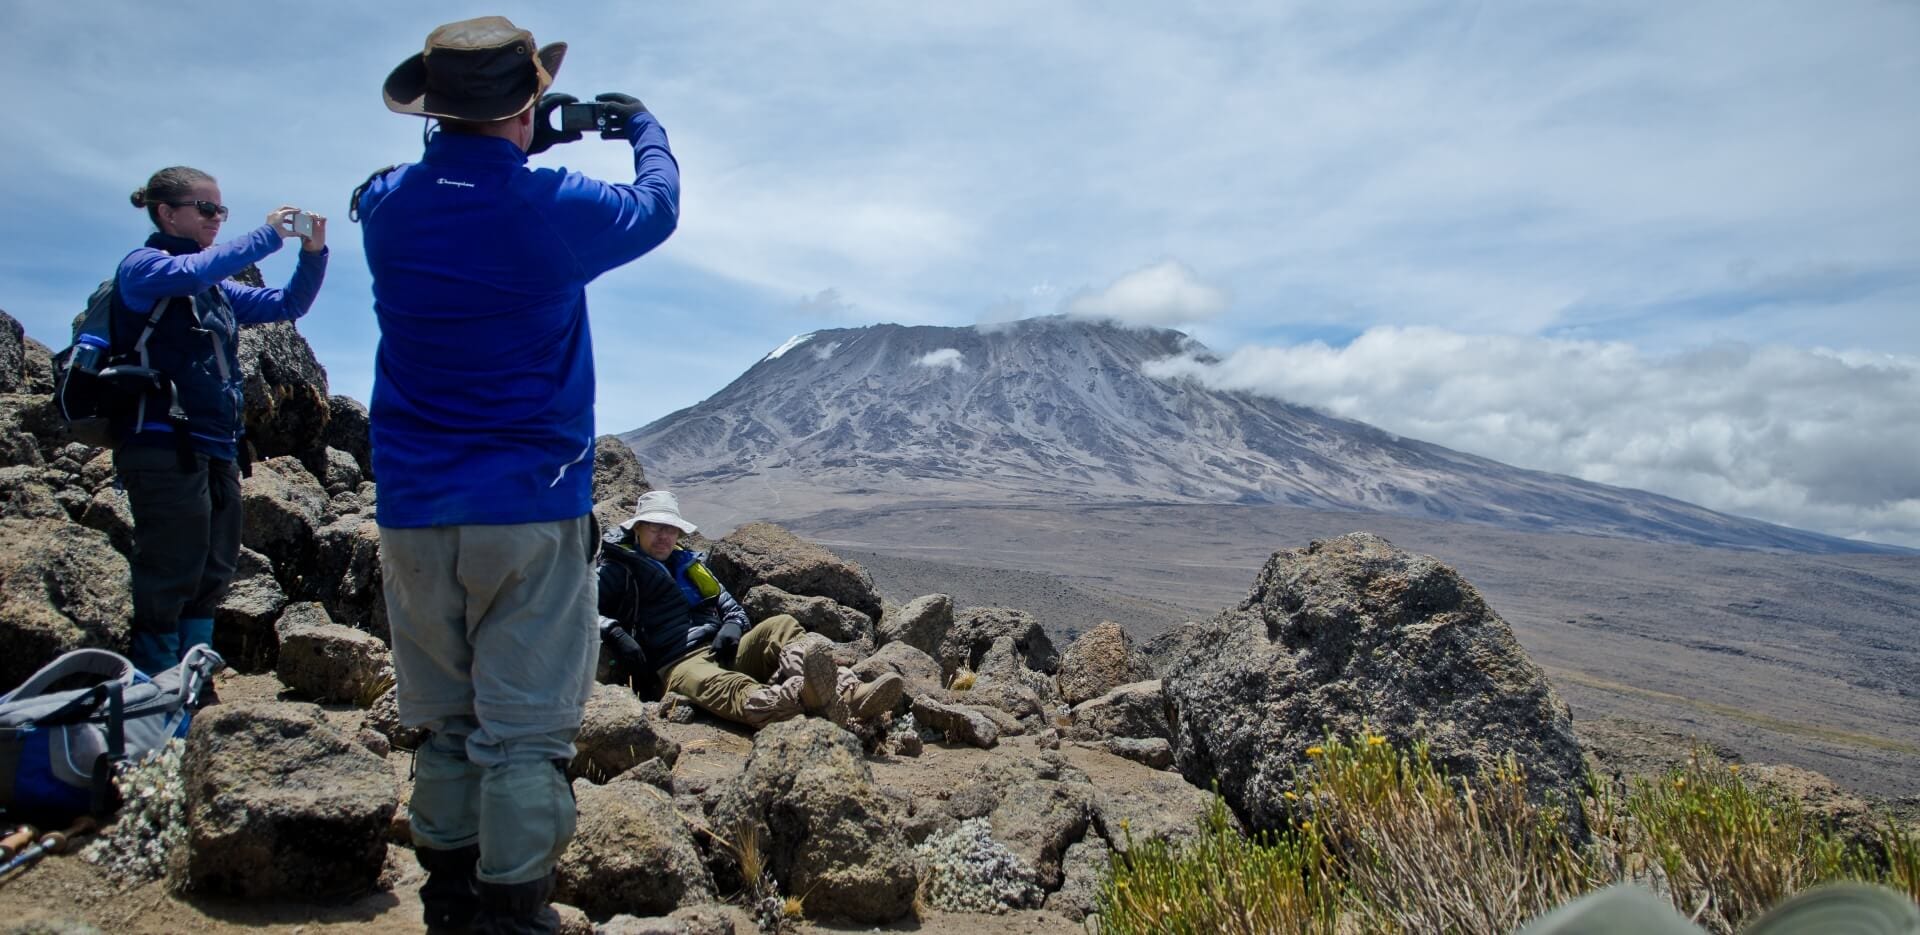 Kilimanjaro mountain safety